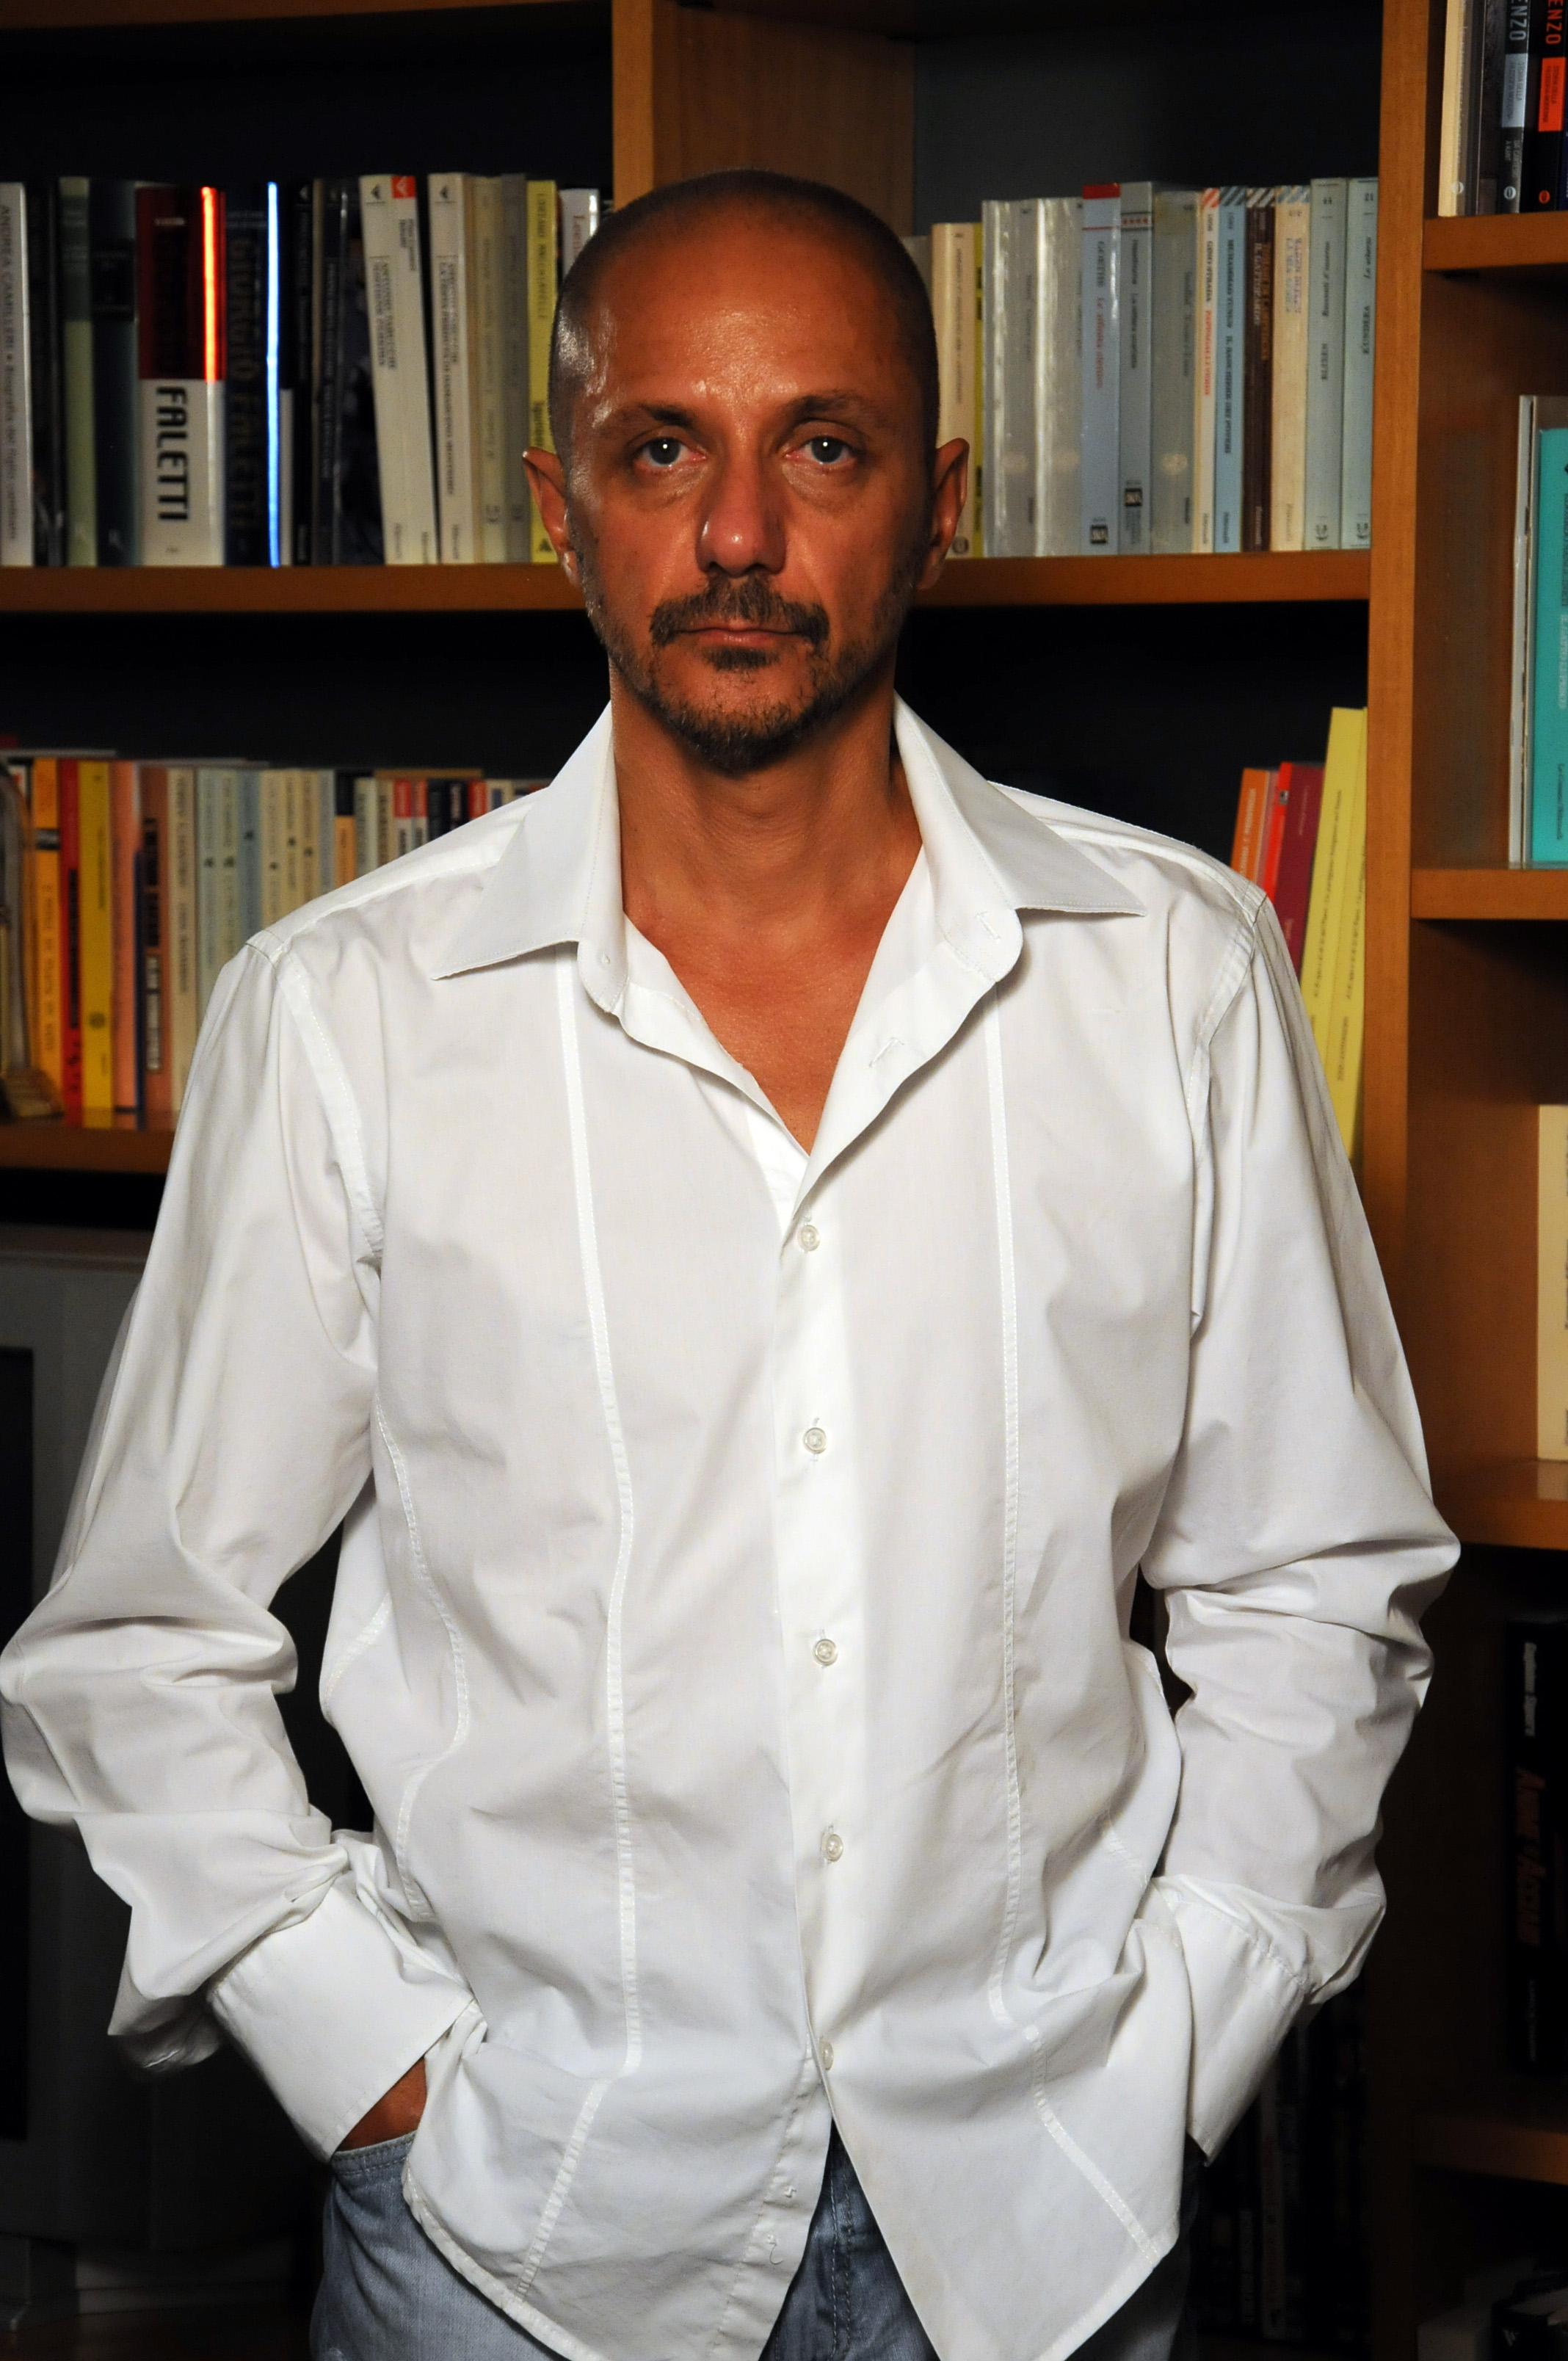 Risultati immagini per Giuliano Bugani operaio, giornalista, poeta